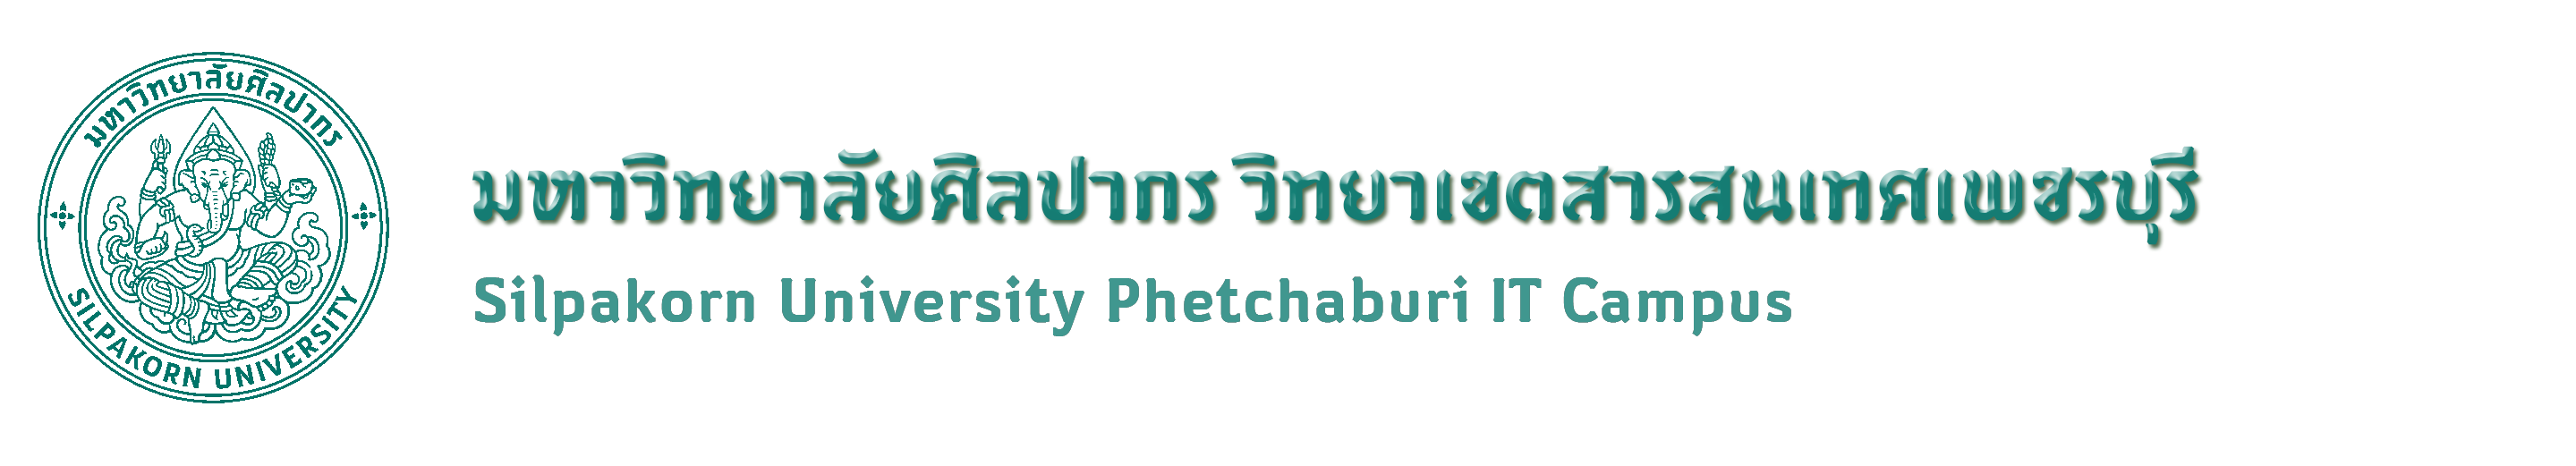 มหาวิทยาลัยศิลปากร วิทยาเขตสารสนเทศเพชรบุรี